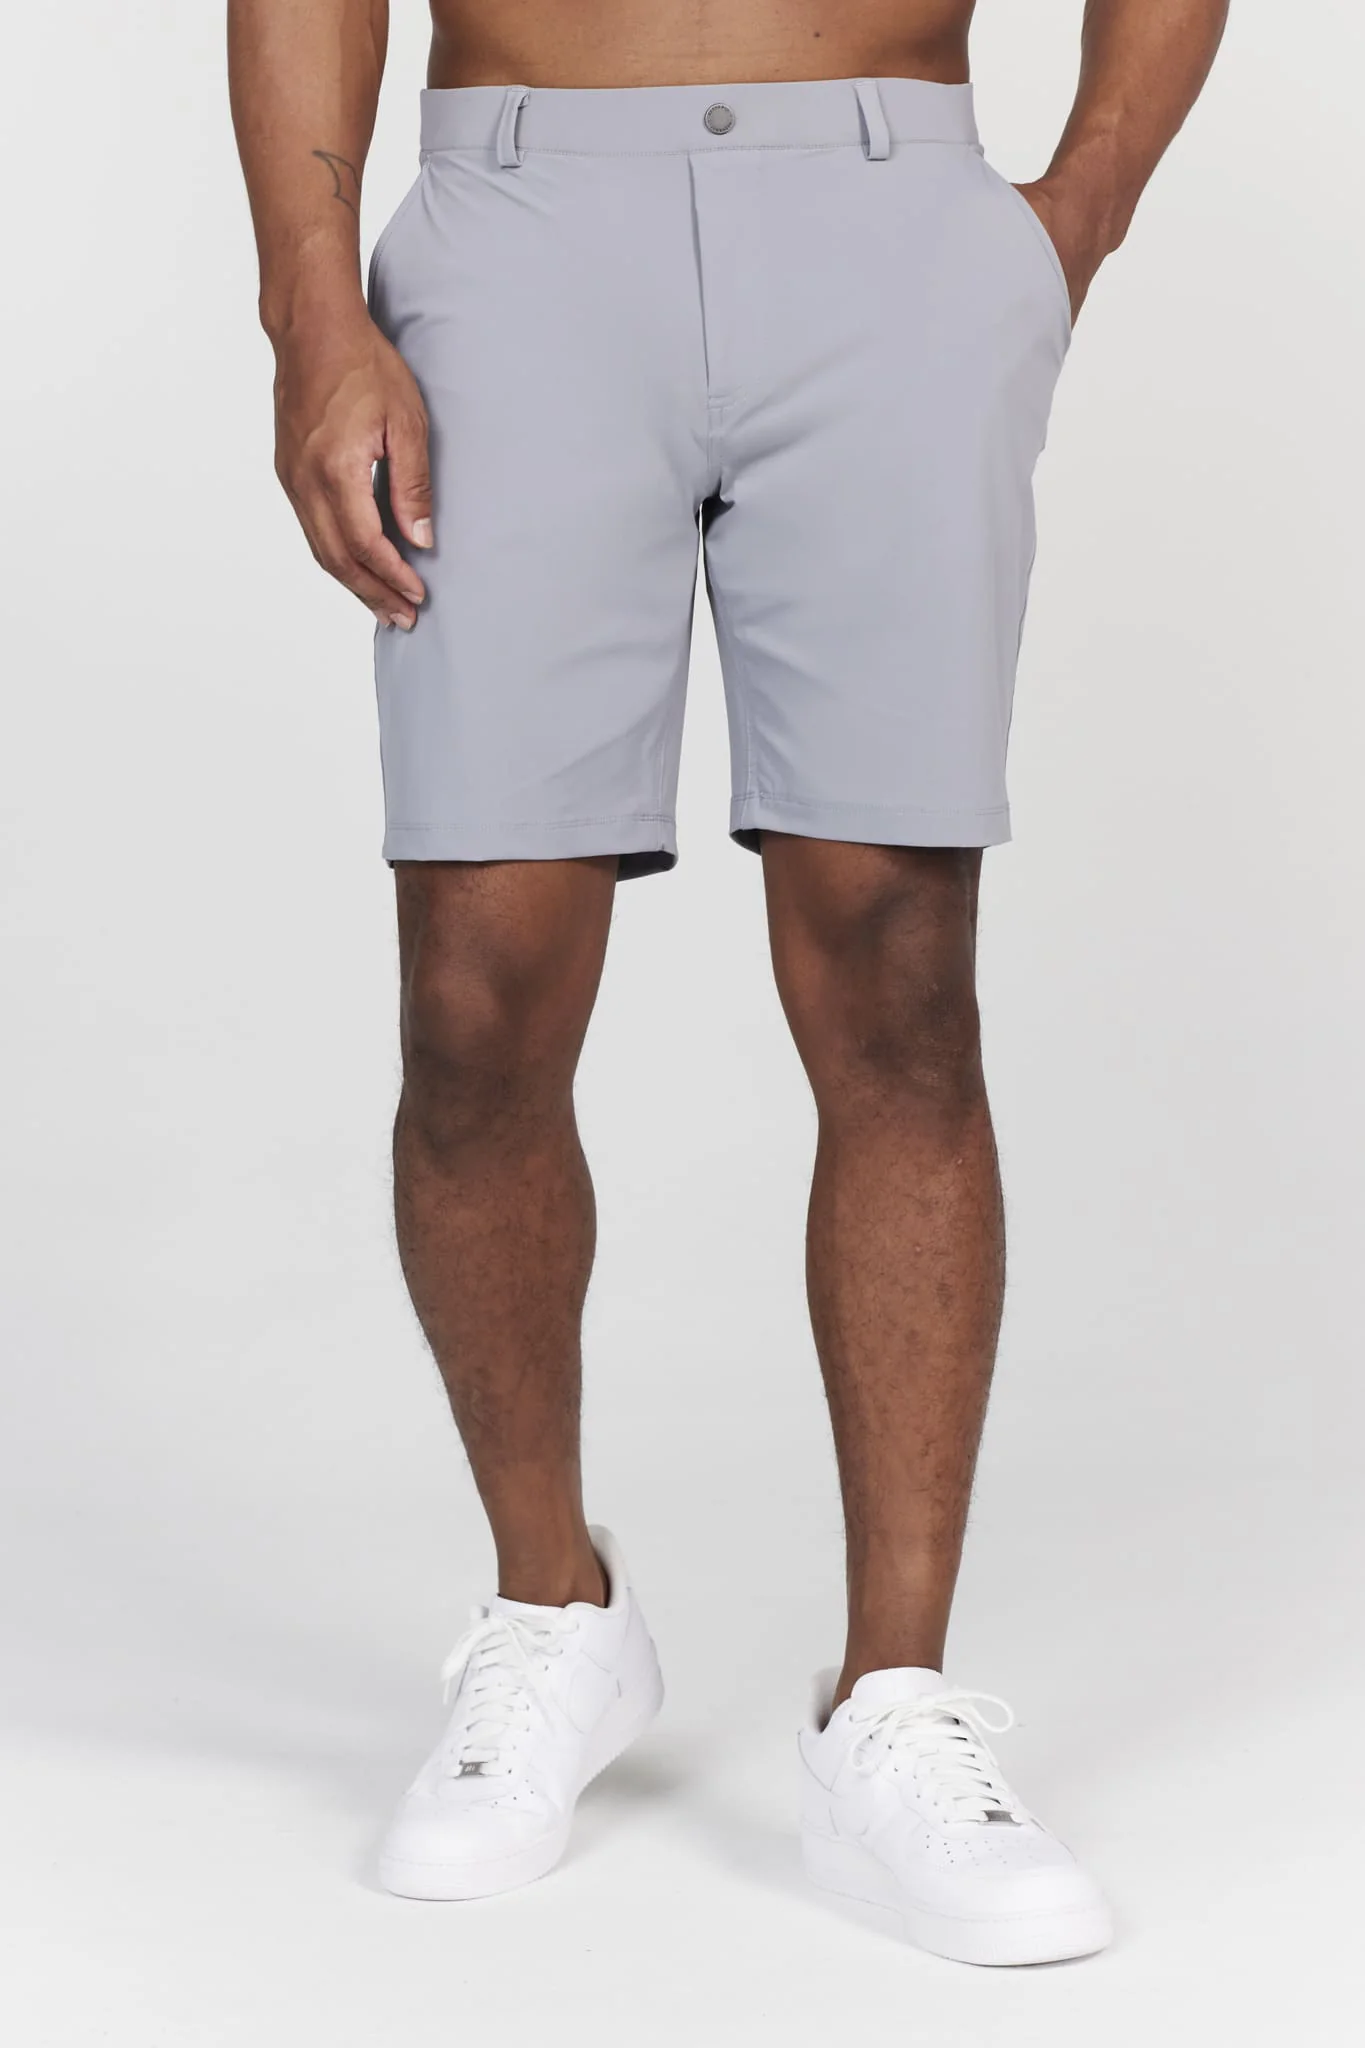 Redvanly Hanover Golf Shorts